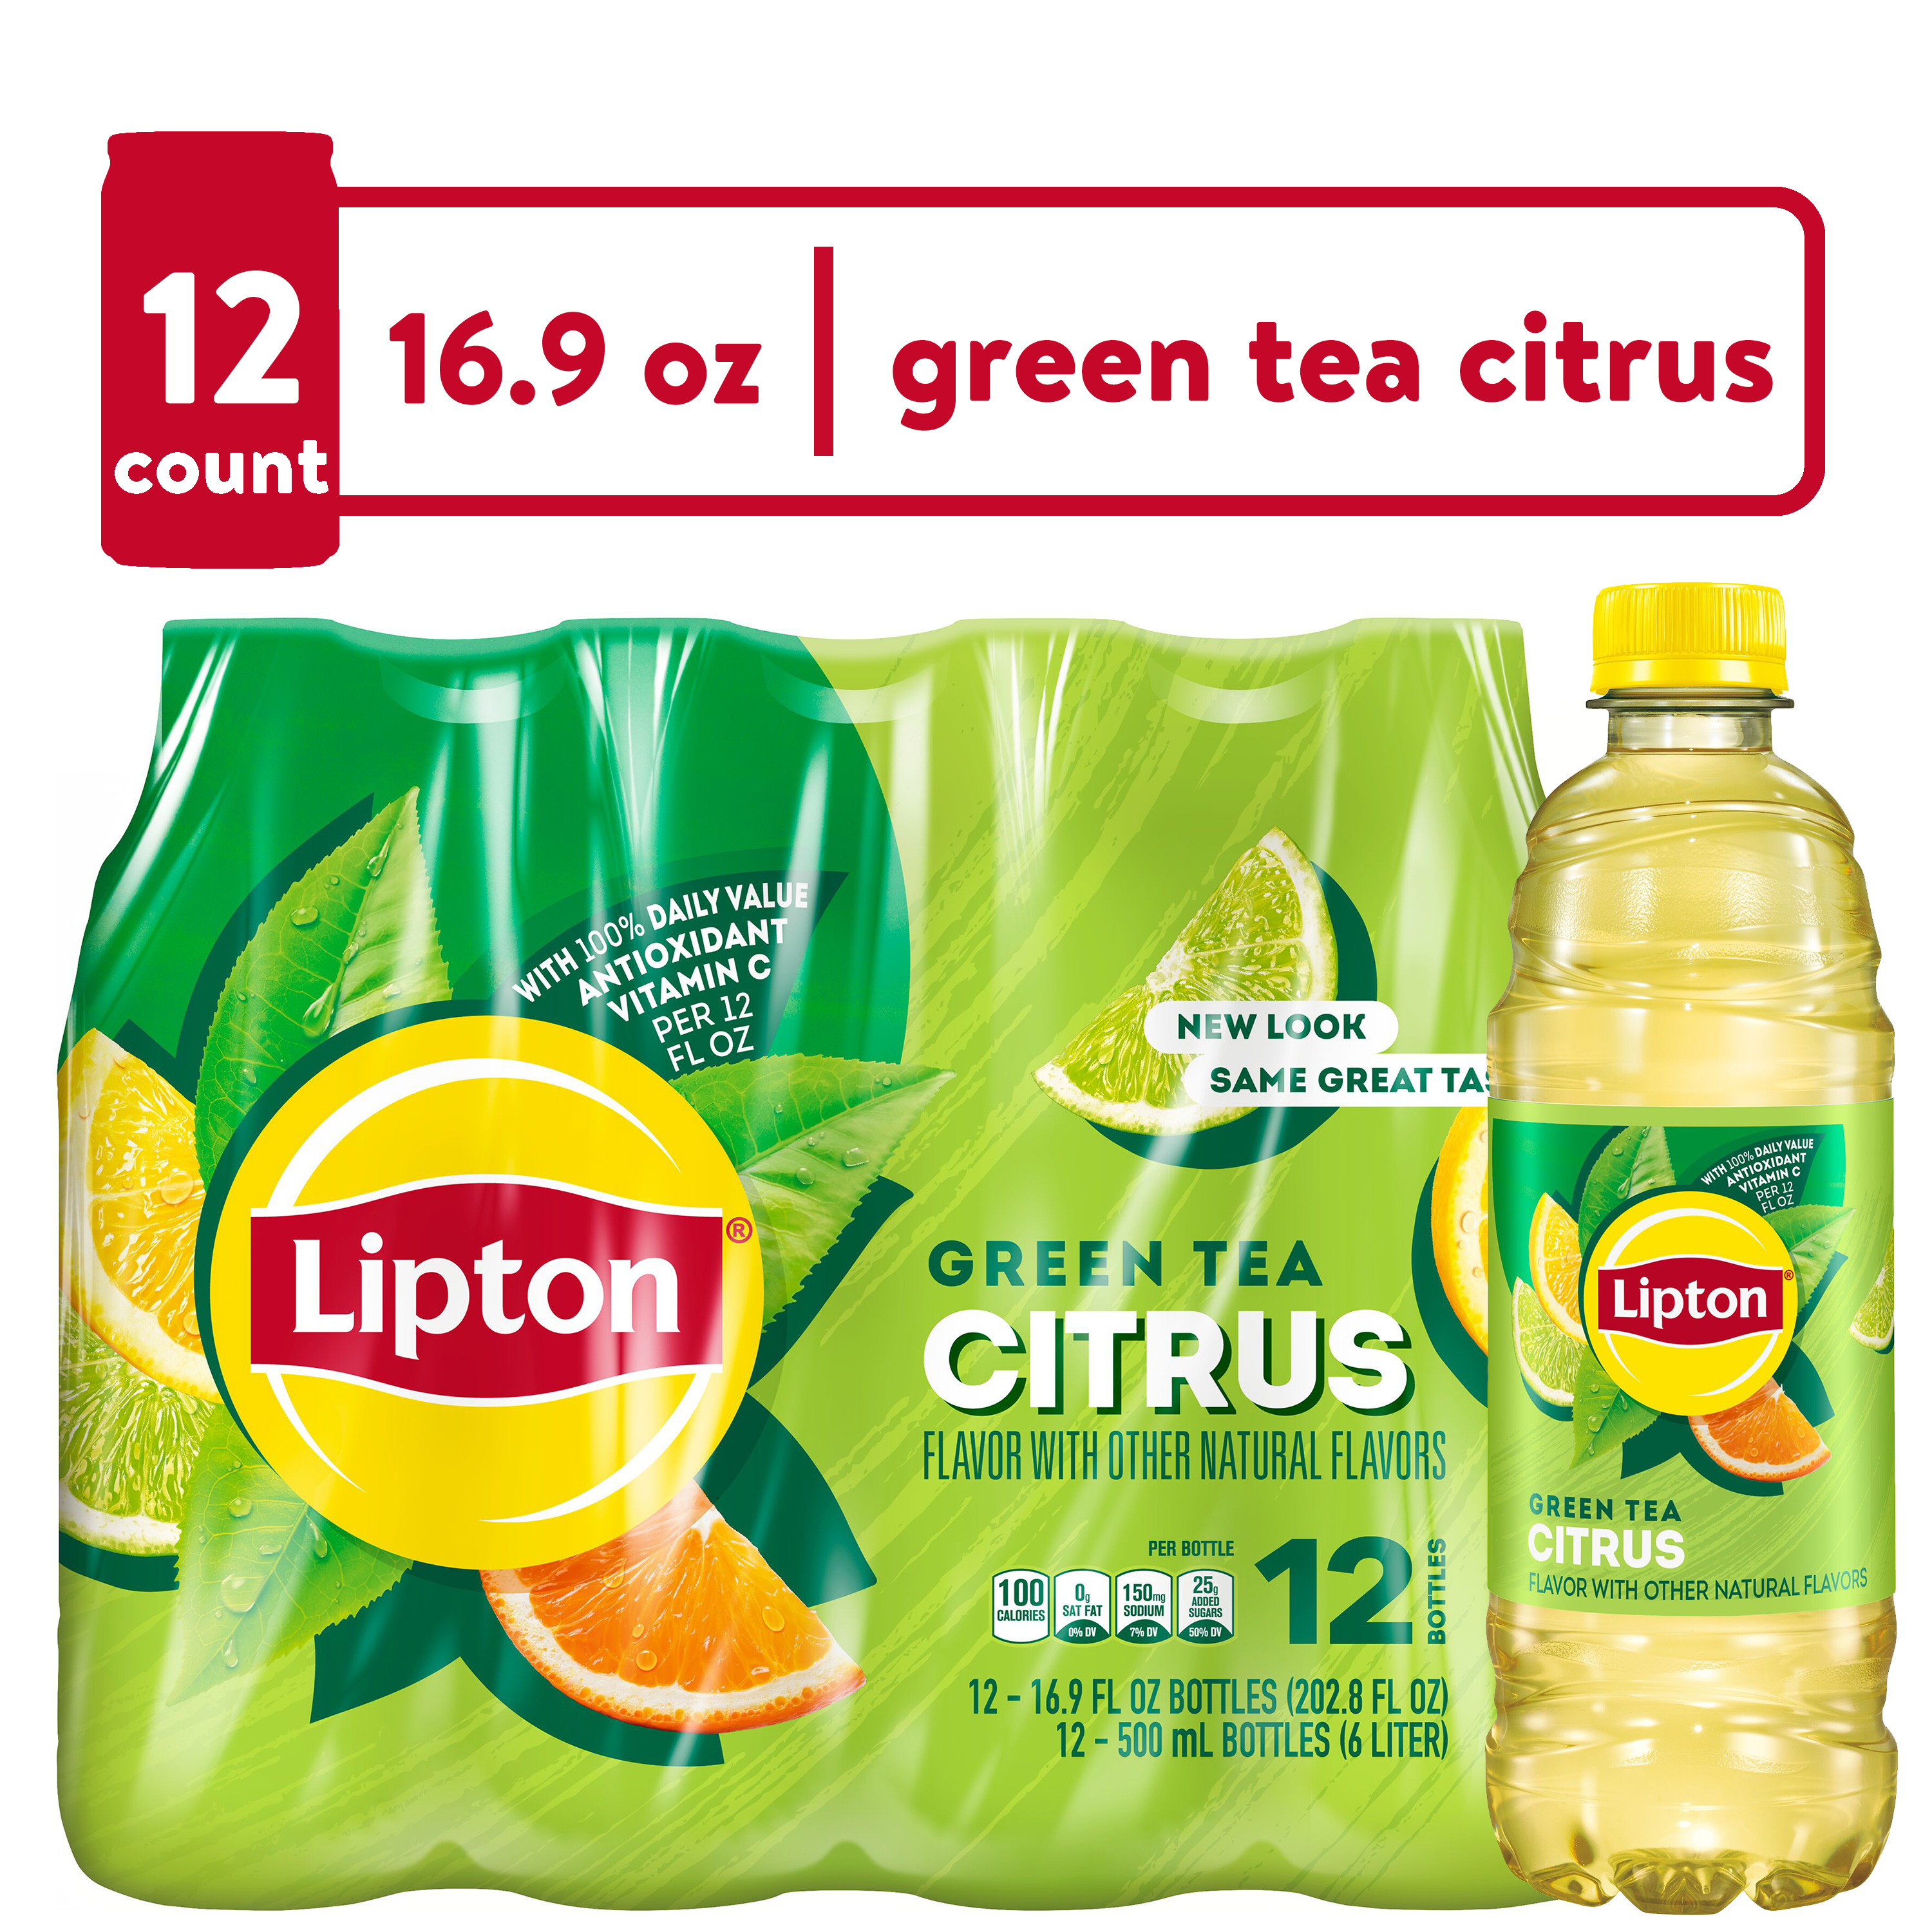 Lipton Iced Green Tea, Citrus Bottled Tea Drink, 16.9 oz, 12 Bottles - image 1 of 7